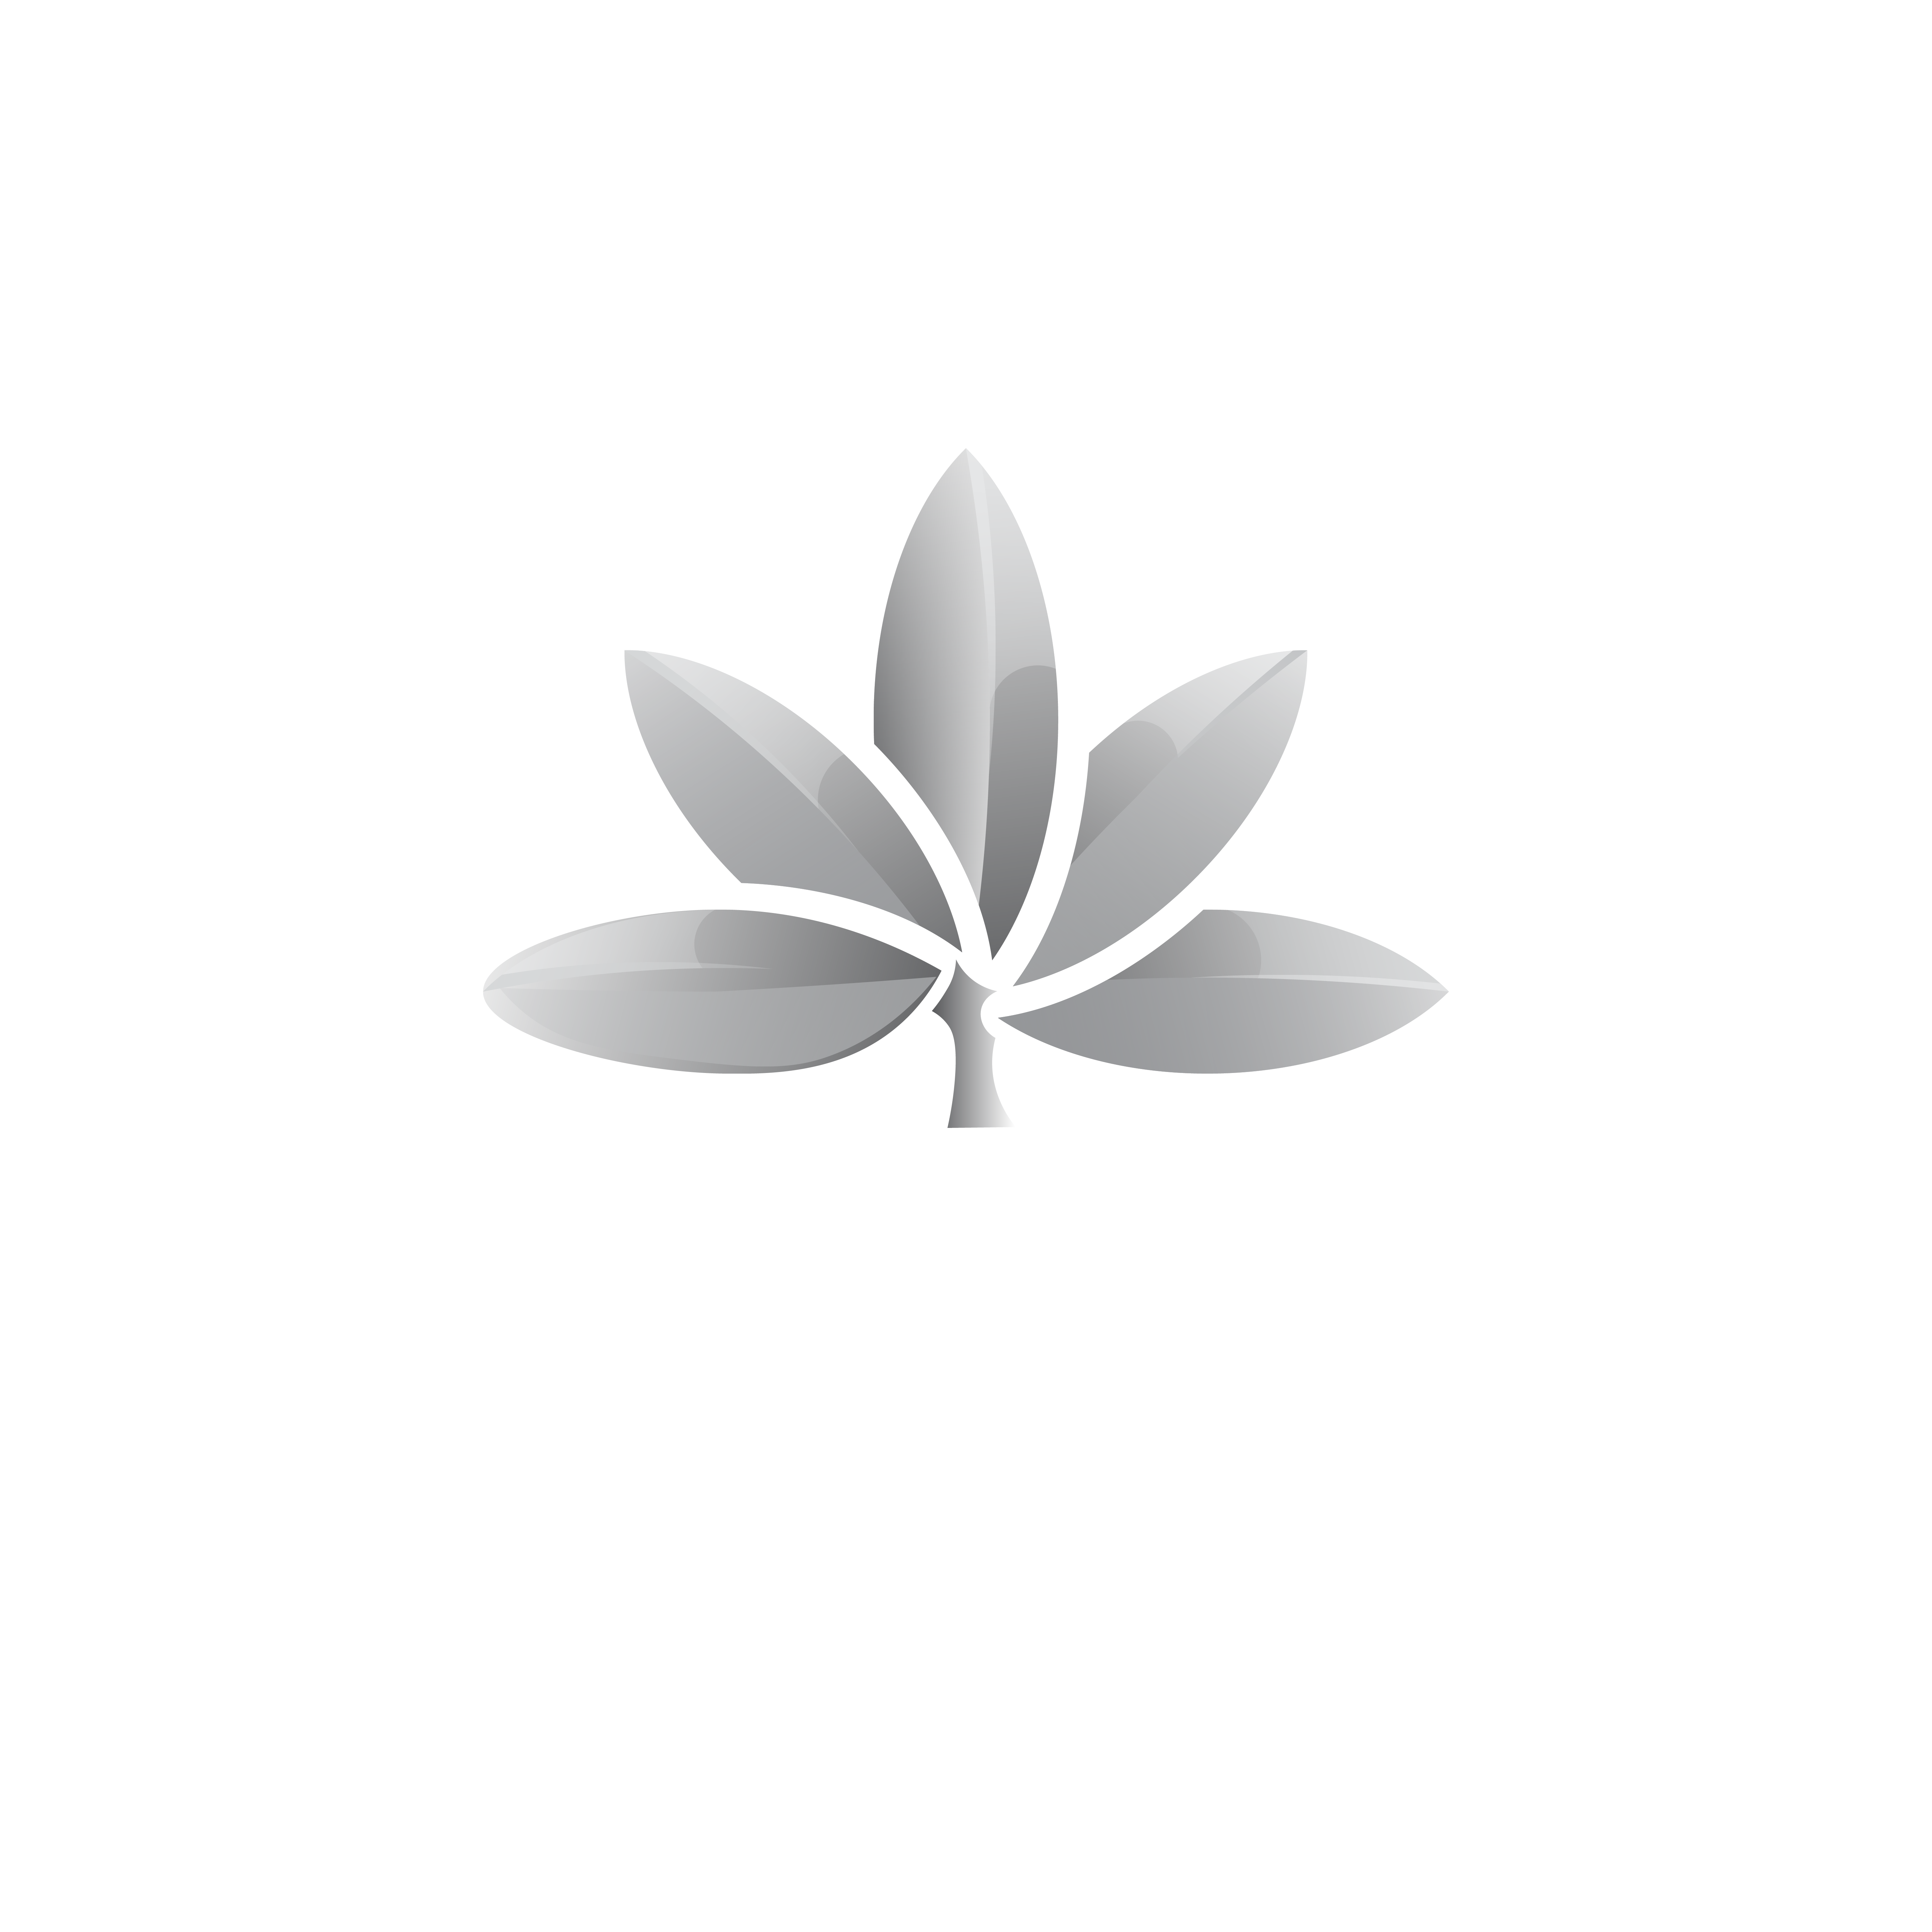 Prestige-01